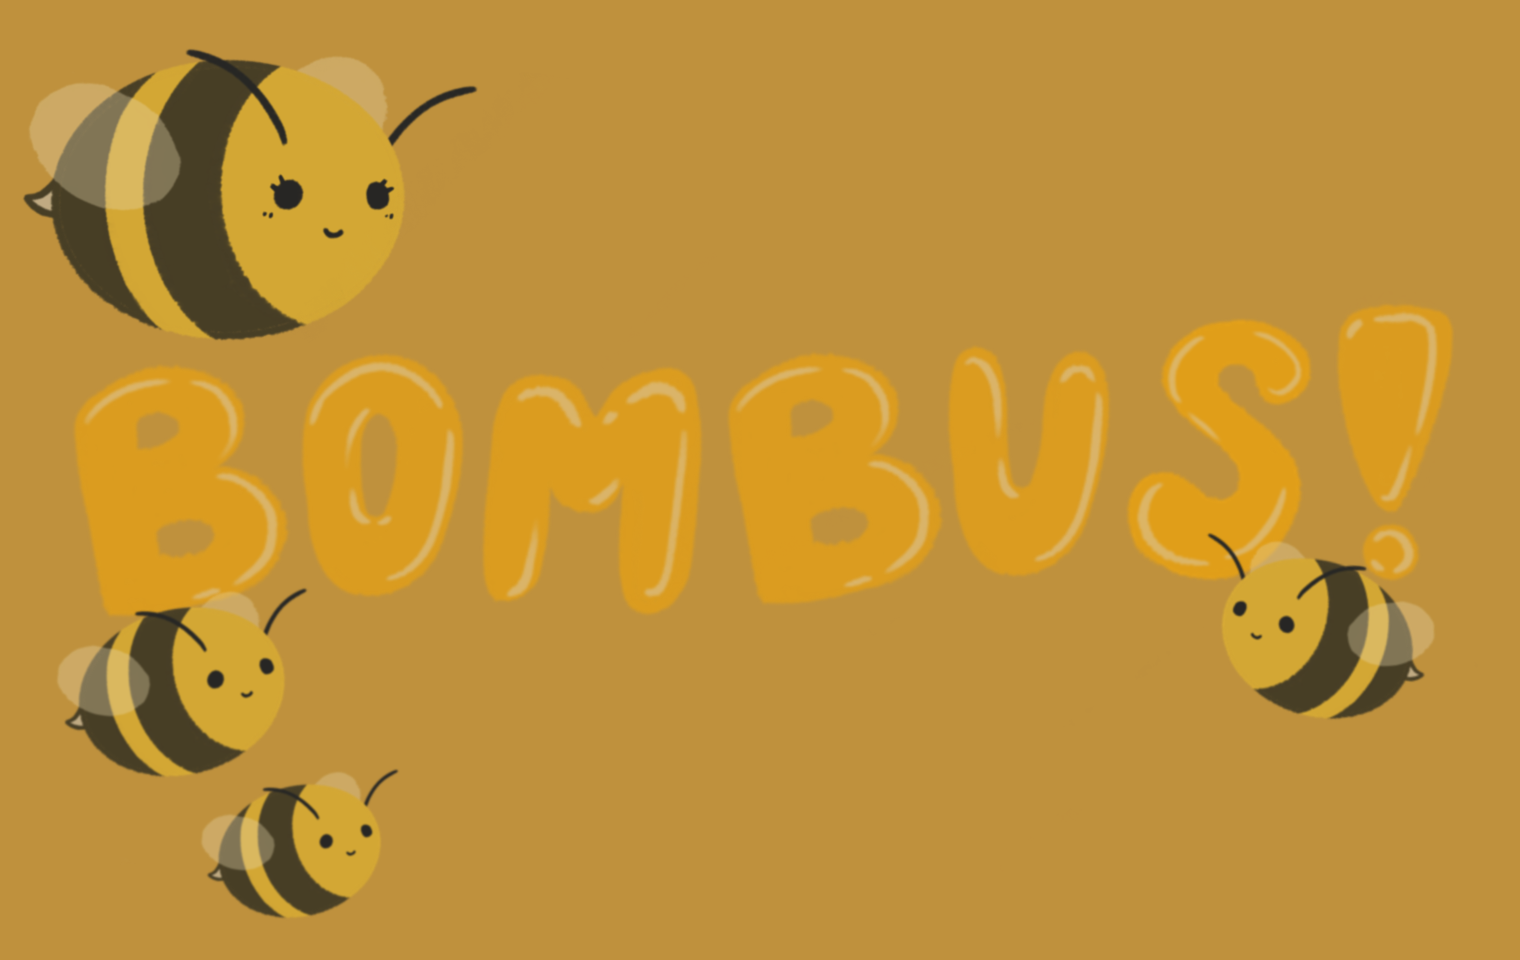 Bombus